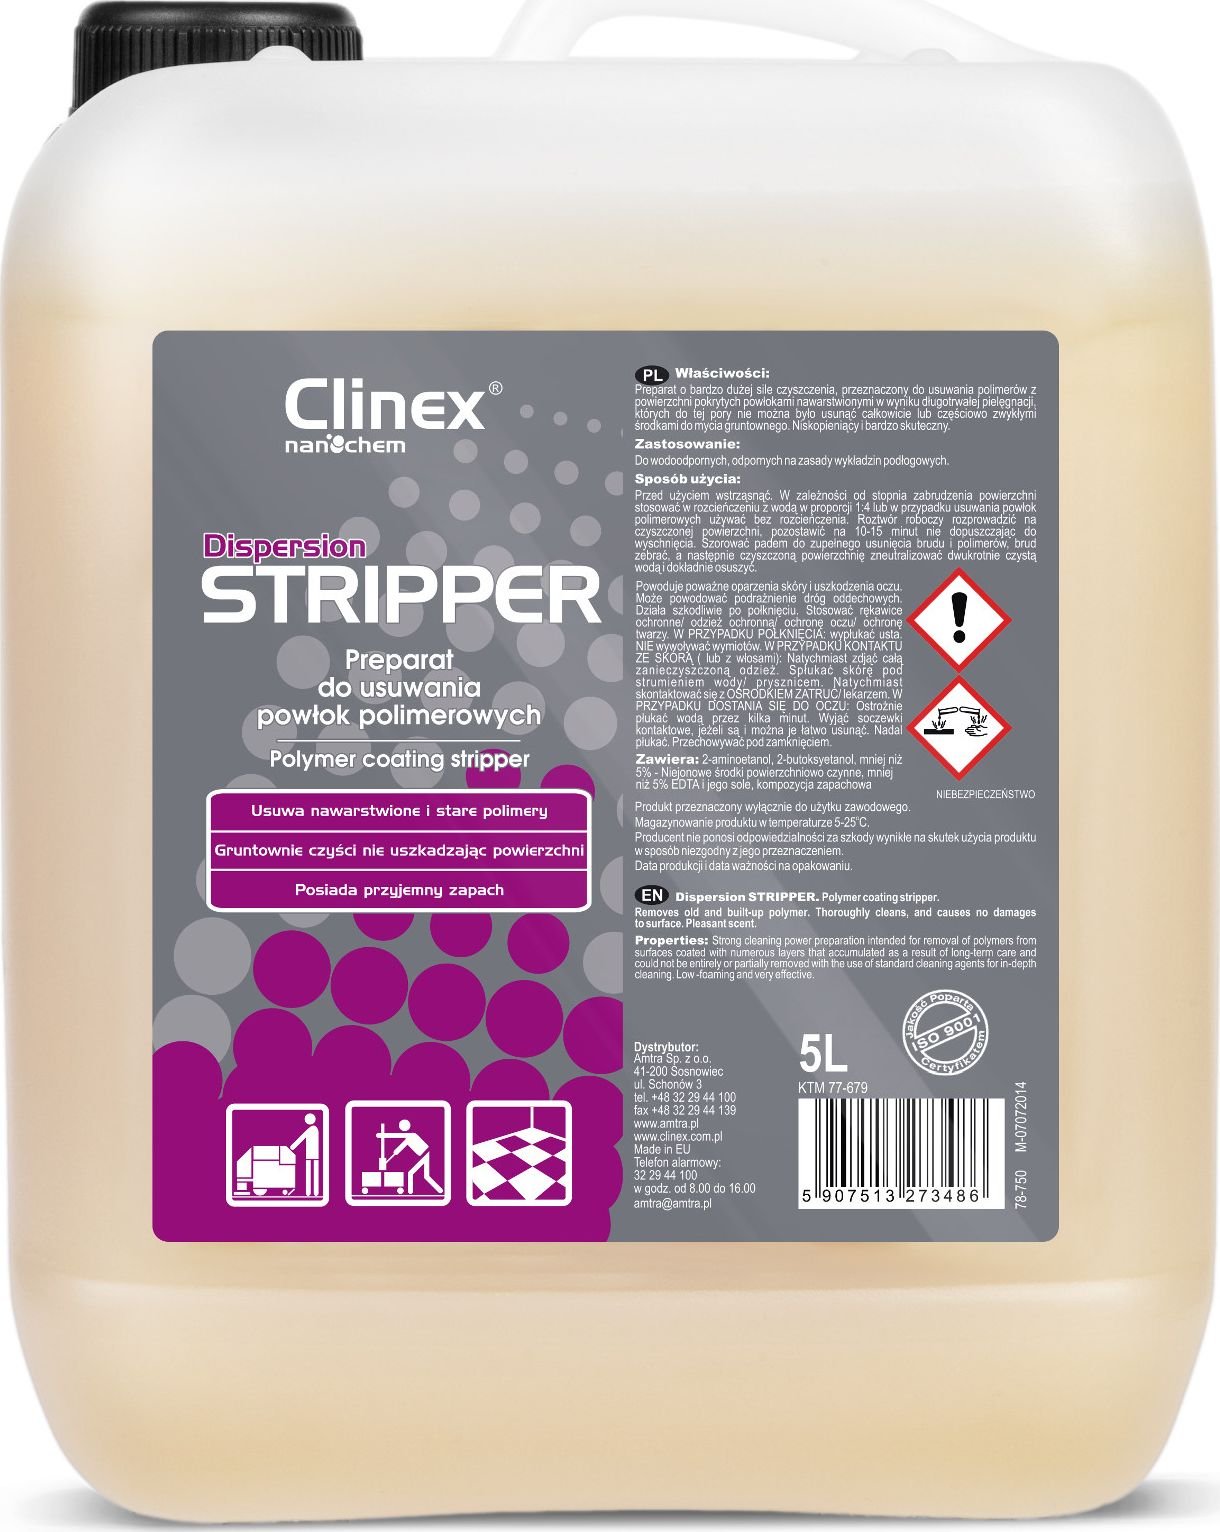 Clinex Płyn o dużej sile do usuwania powłok polimerowych z posadzek CLINEX Dispersion STRIPPER 5L Płyn o dużej sile do usuwania powłok polimerowych z posadzek CLINEX Dispersion STRIPPER 5L